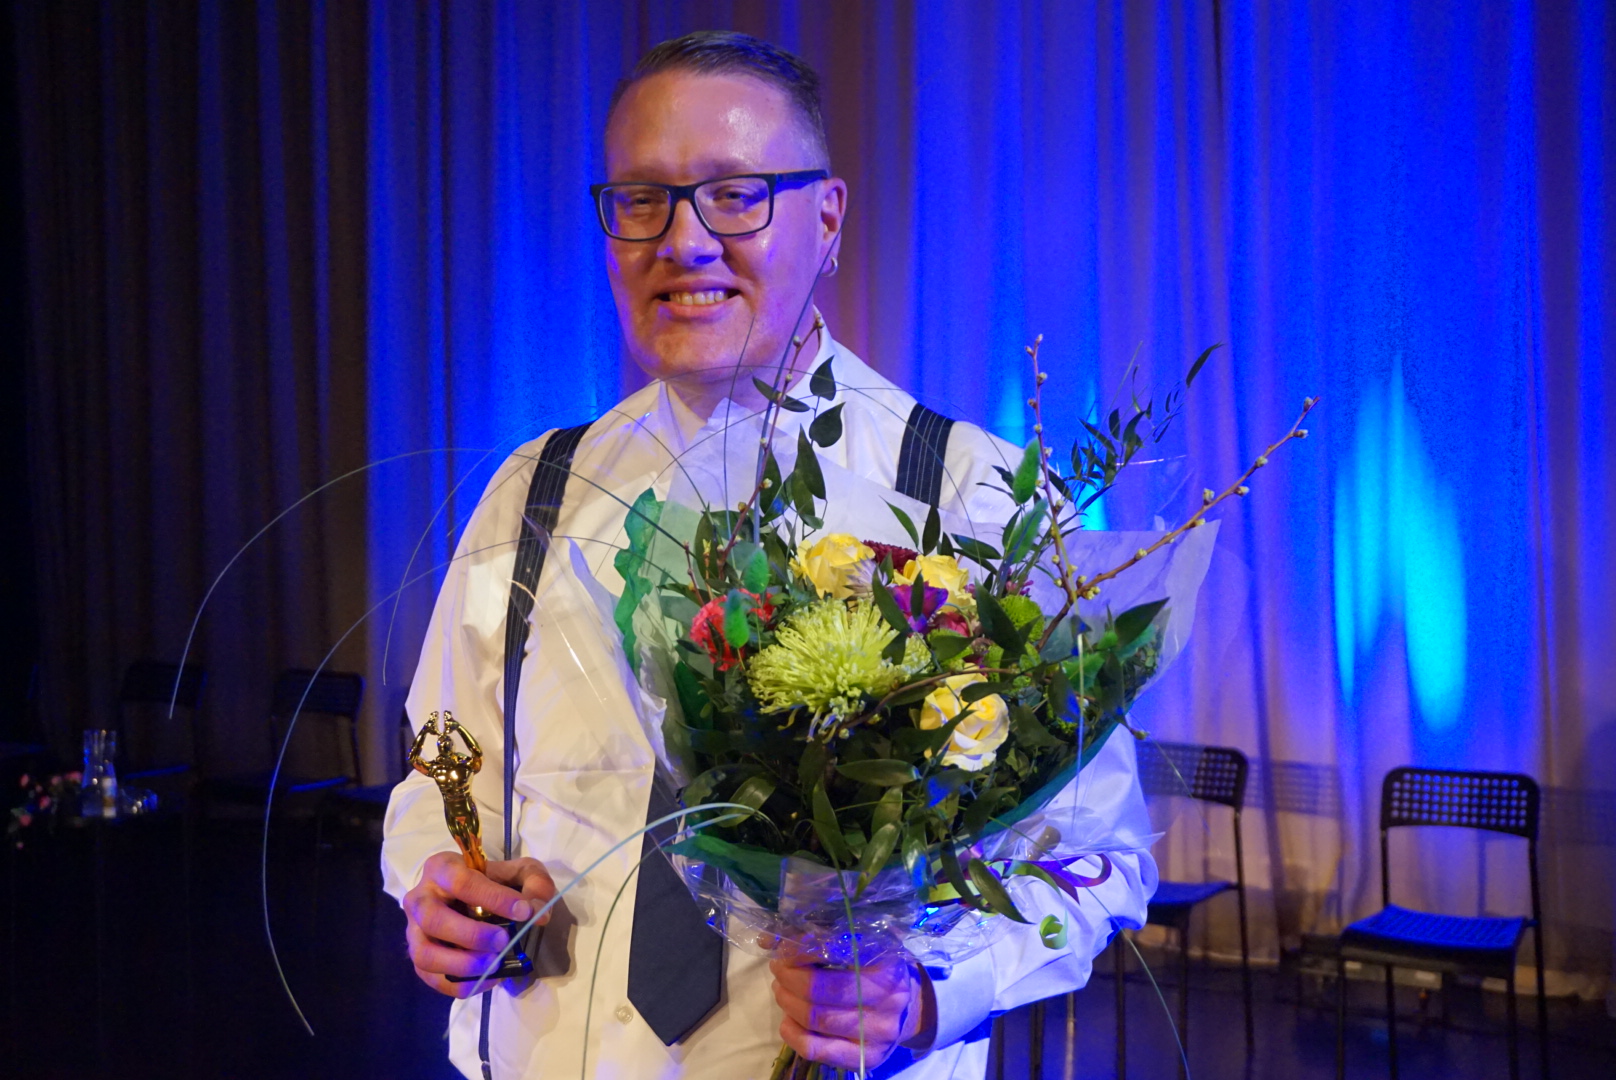 En bild på vinnaren Robban som håller i blommor och en pokal